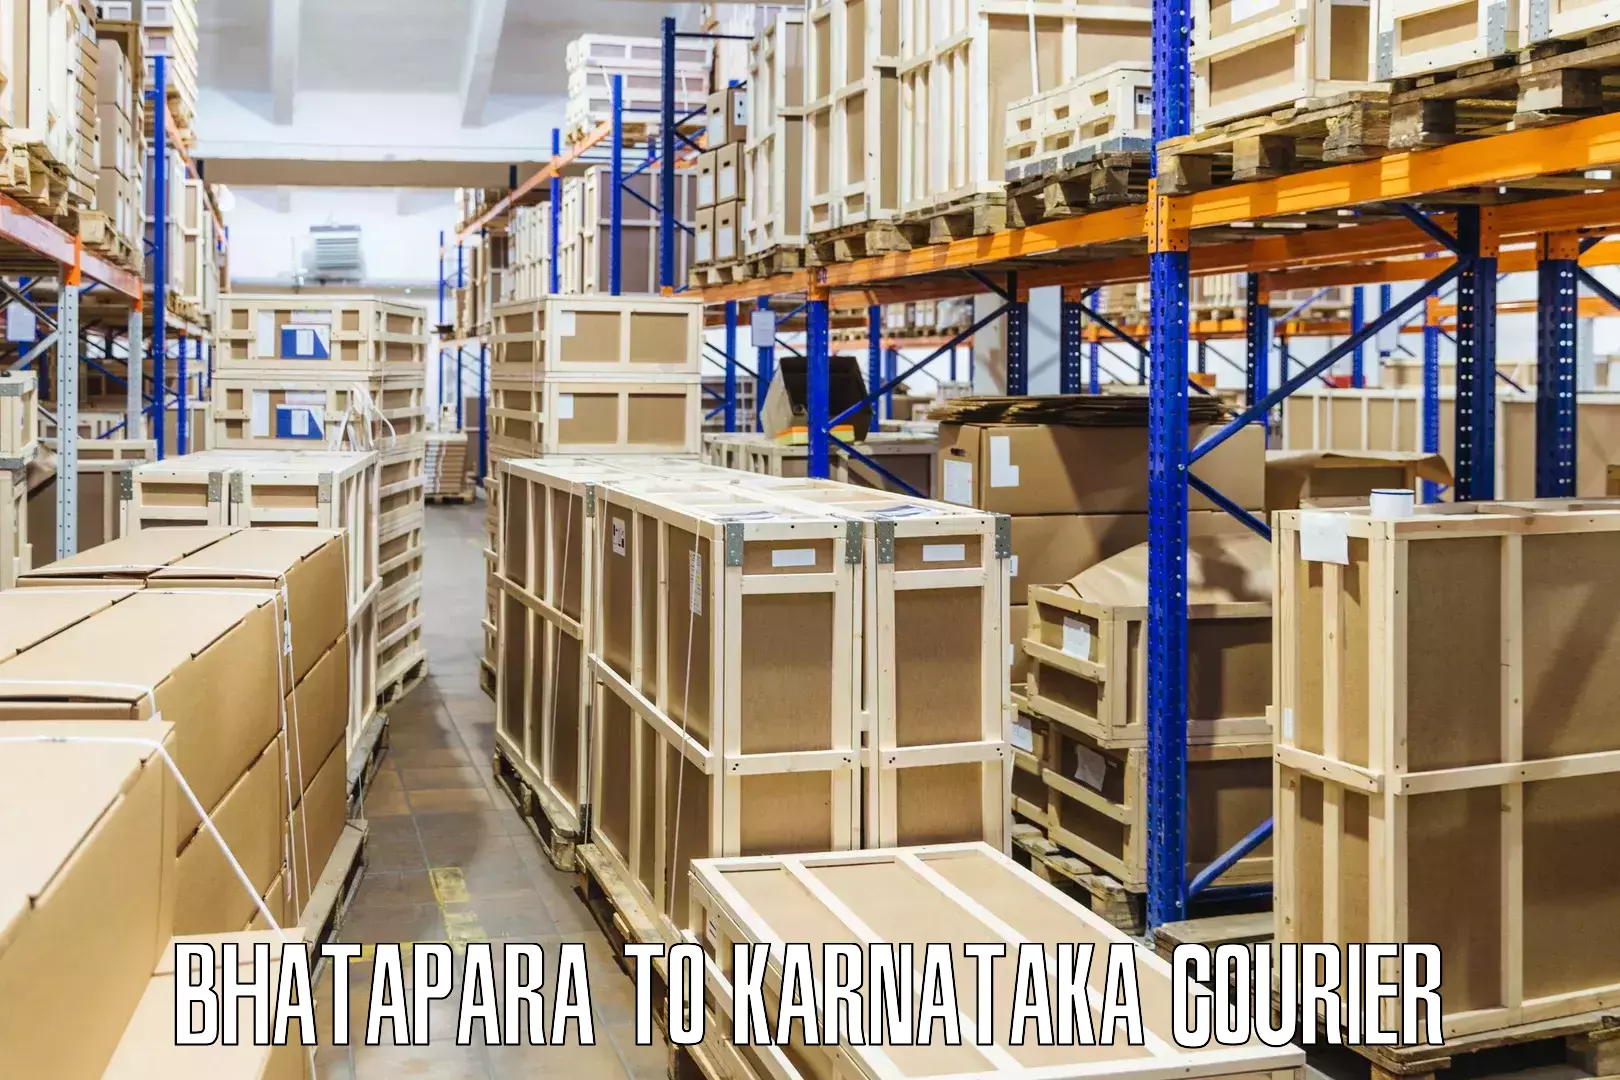 Door-to-door shipment Bhatapara to Nanjangud